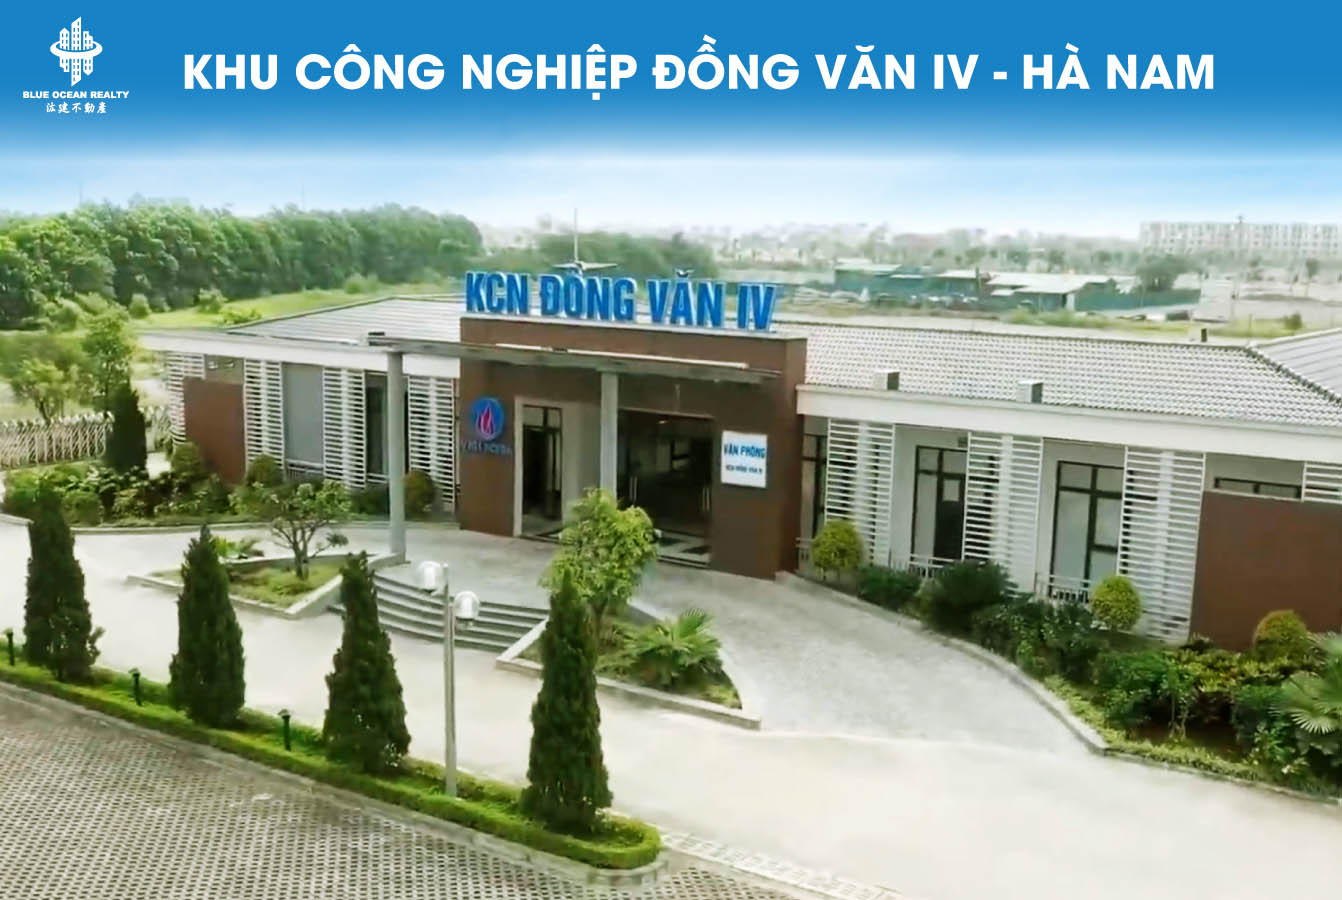 Khu công nghiệp Đồng Văn IV tỉnh Hà Nam